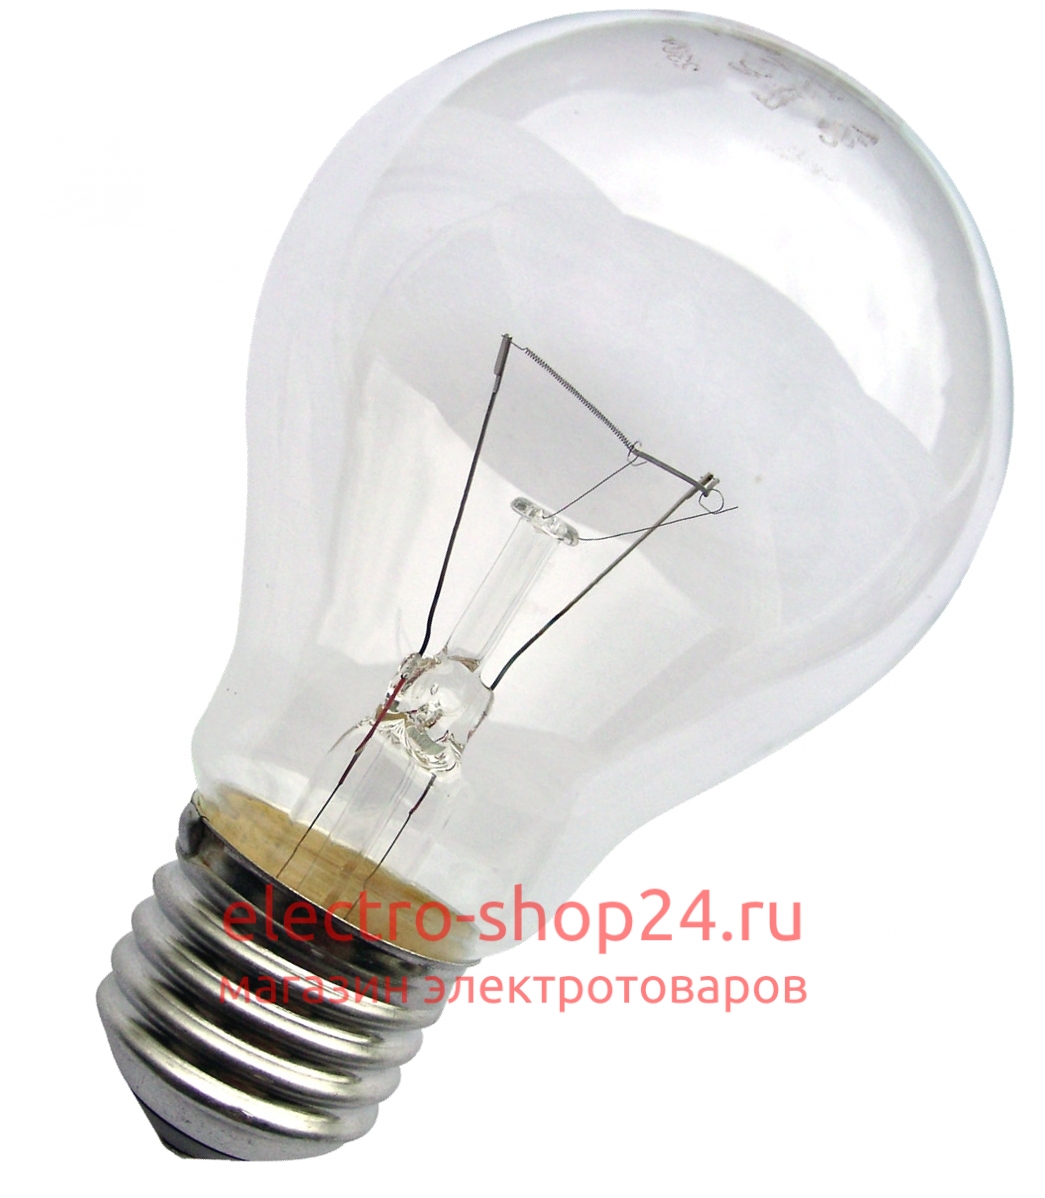 Термоизлучатель (лампа накаливания) 150Вт 220В Е27 прозрачный (Т 230-150 А60) Т 230-150 А60 - магазин электротехники Electroshop